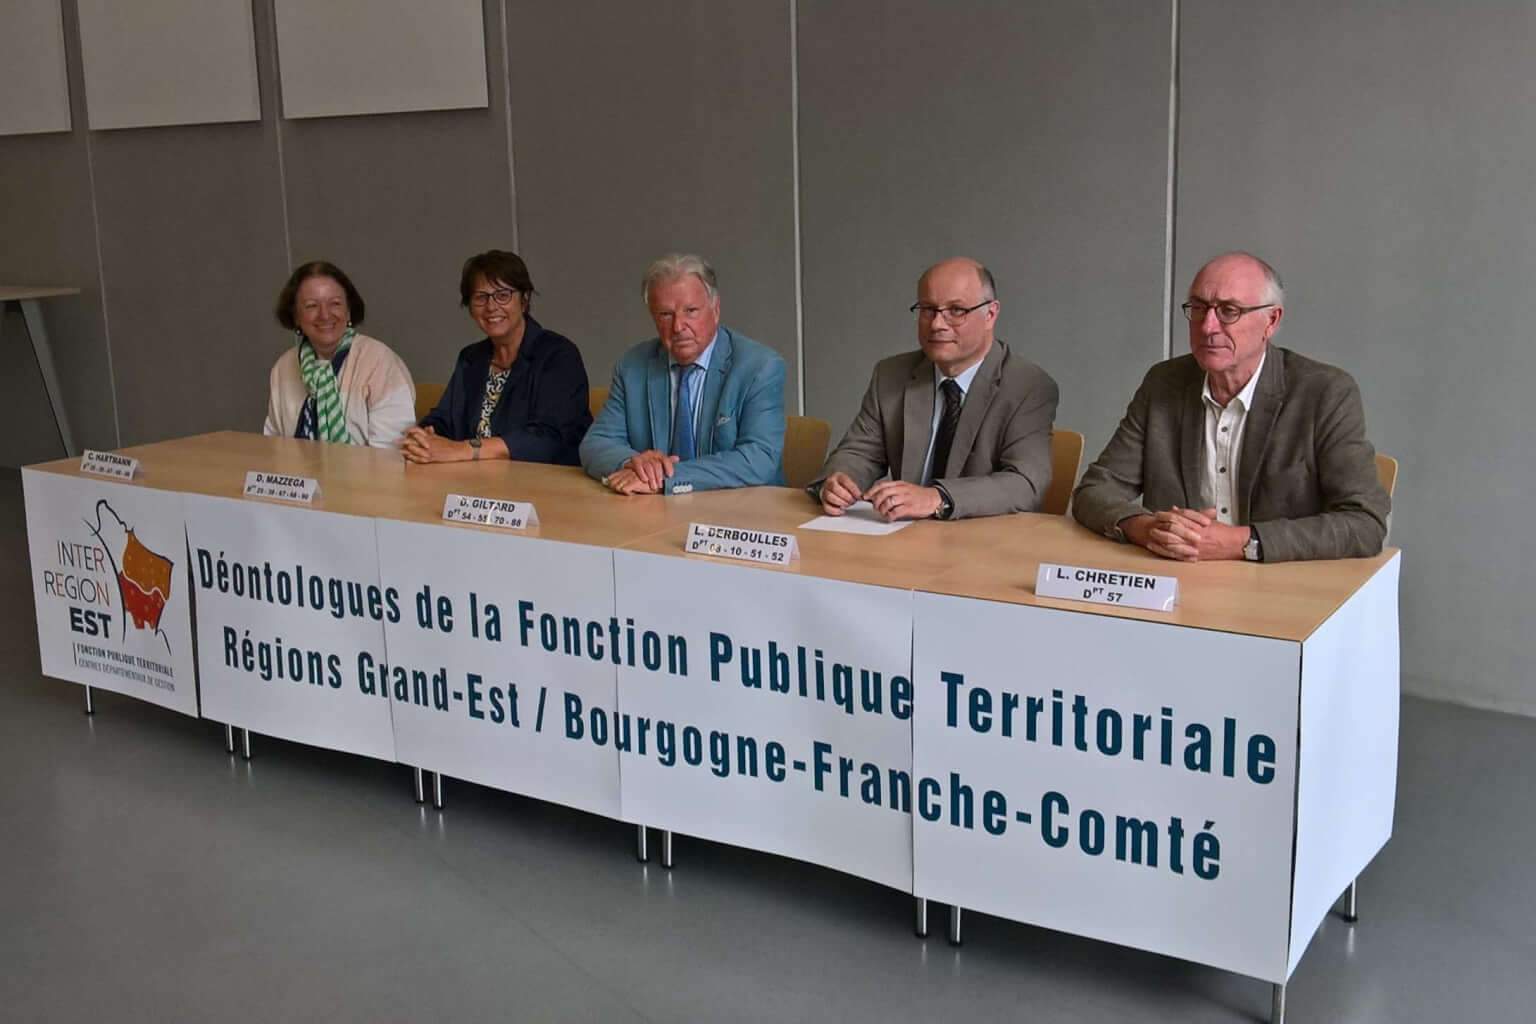 Première conférence des référents déontologues du Grand Est et de Bourgogne-Franche-Comté le 30 aoûts 2018 au CDG 54 (Photo DR)